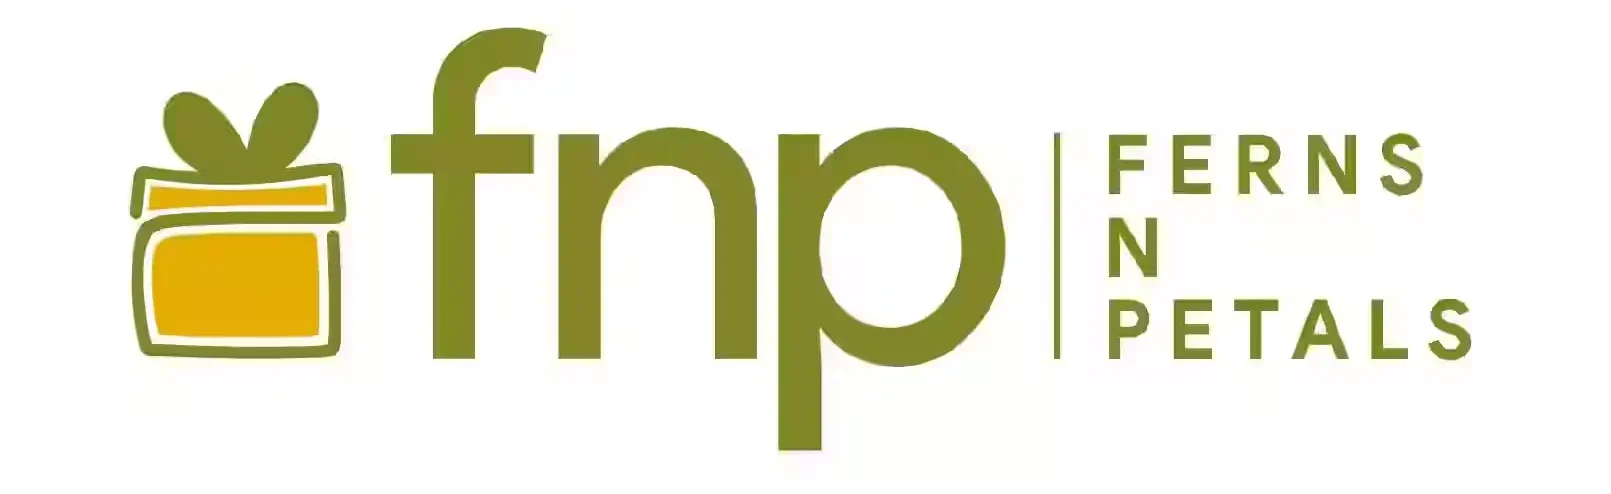 Ferns and Petals Logo